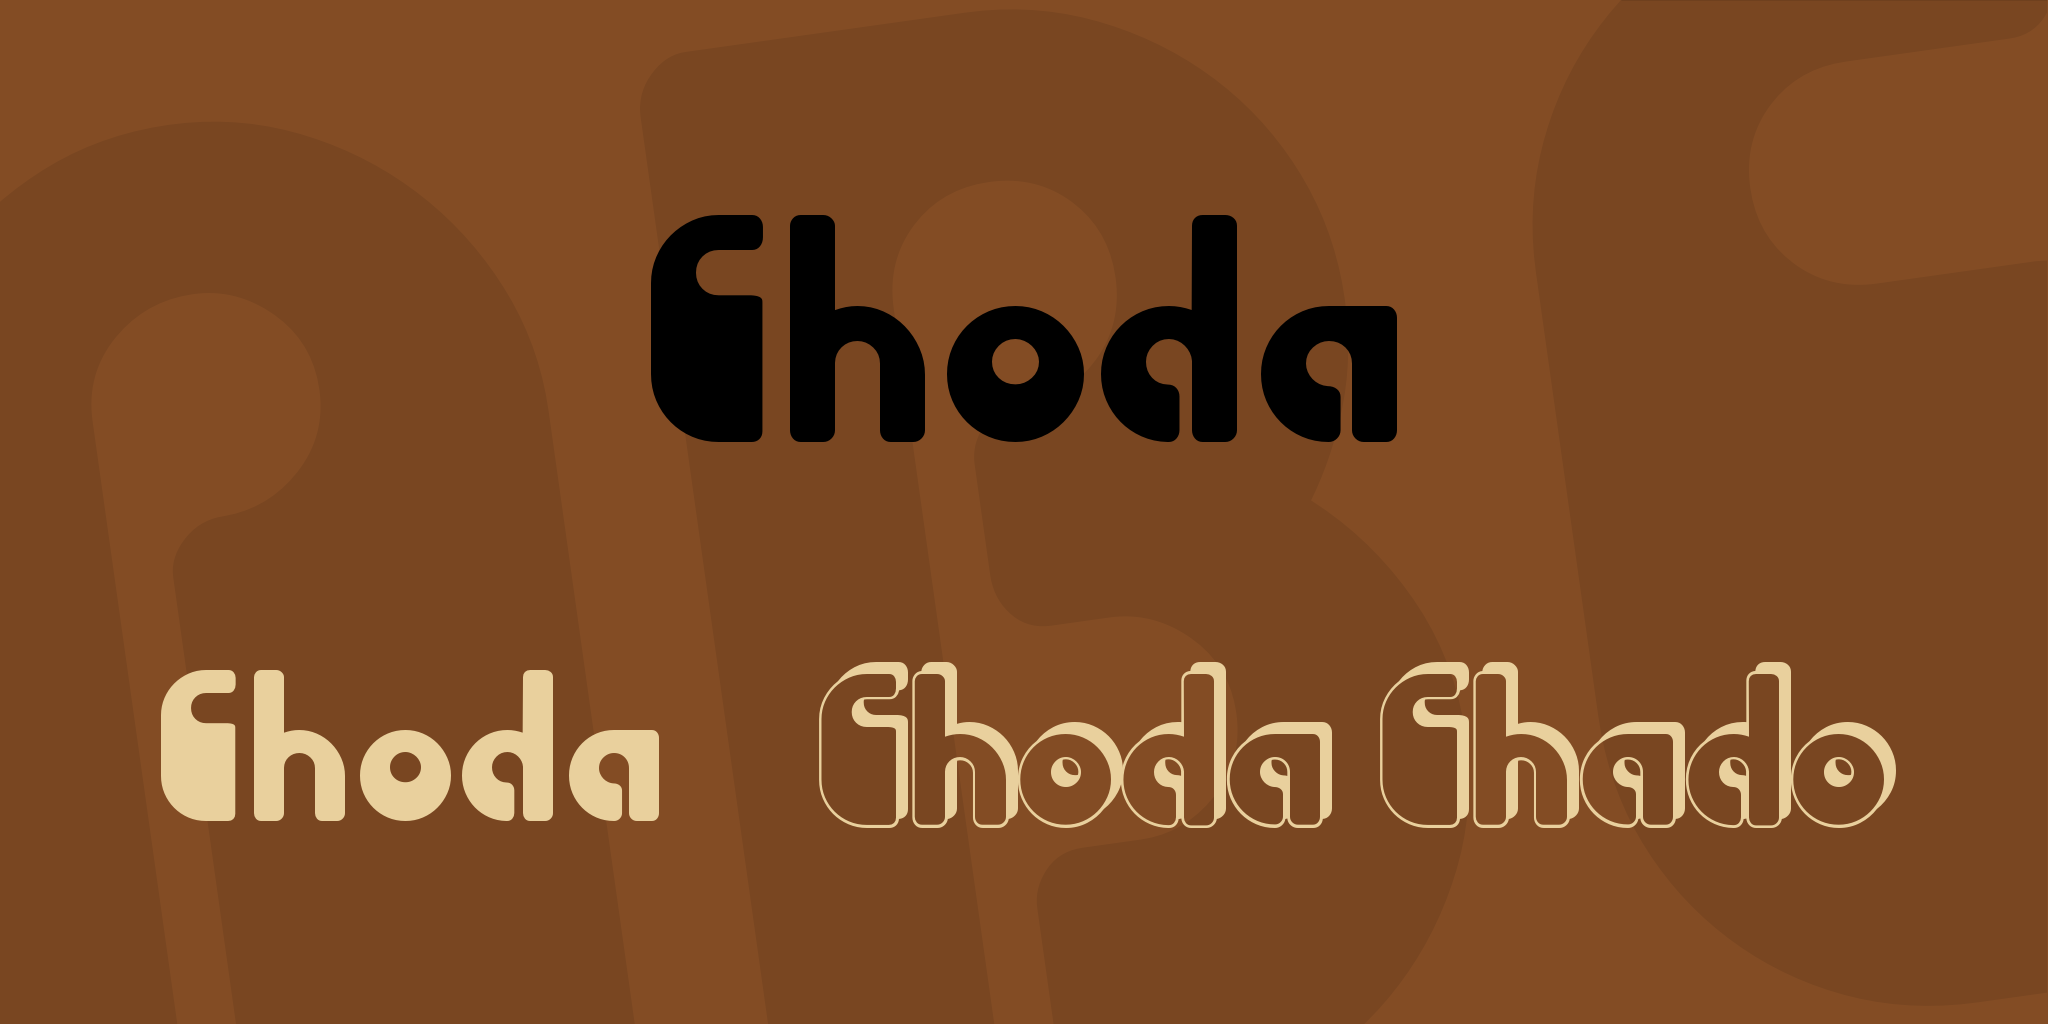 Choda